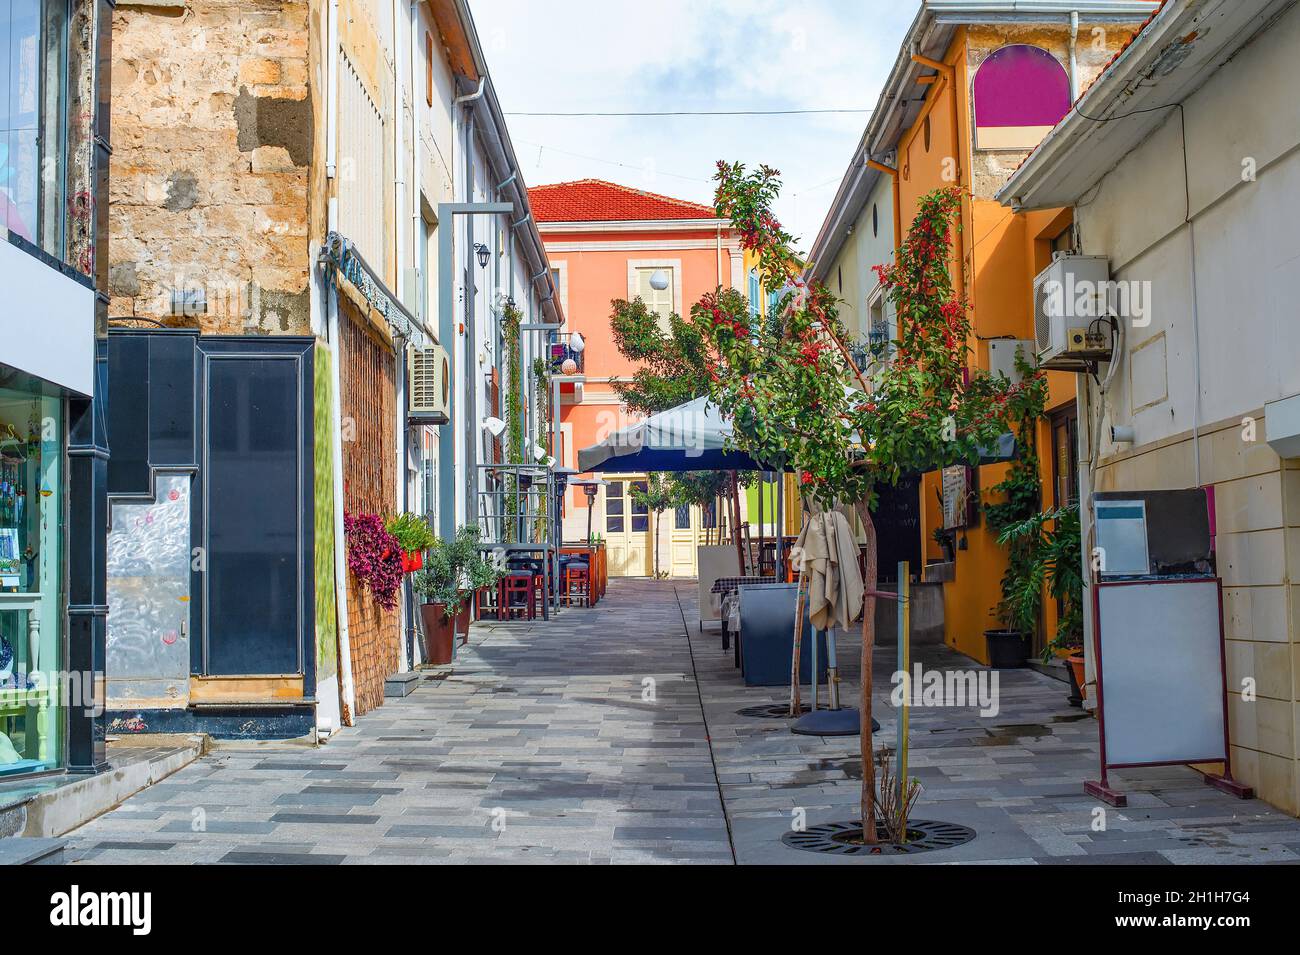 Touristic part of Paphos, street restaurants and souvenir shops, Cyprus Stock Photo